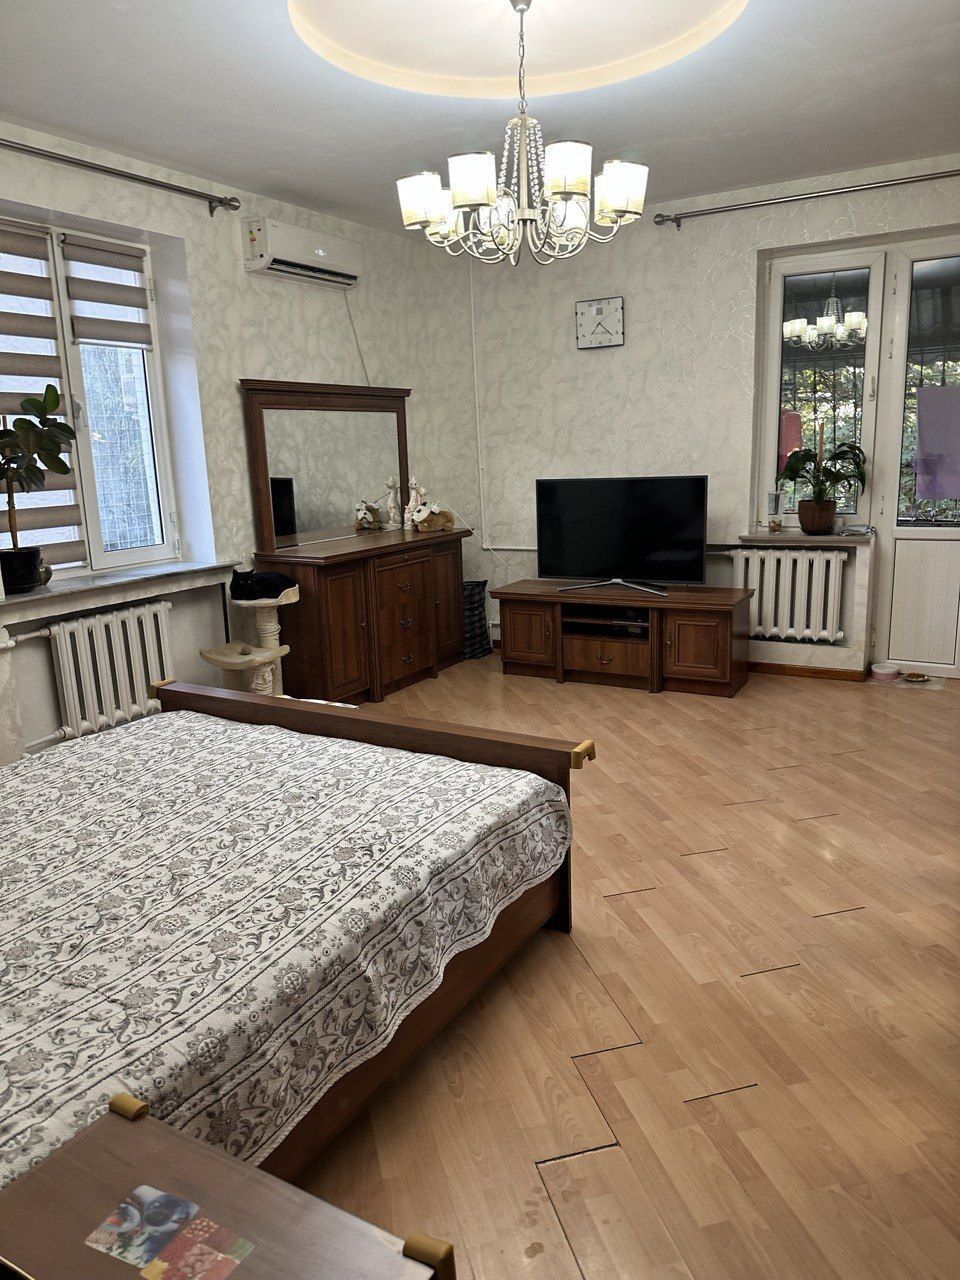 Продается 3х комнатная квартира Максим Горький.